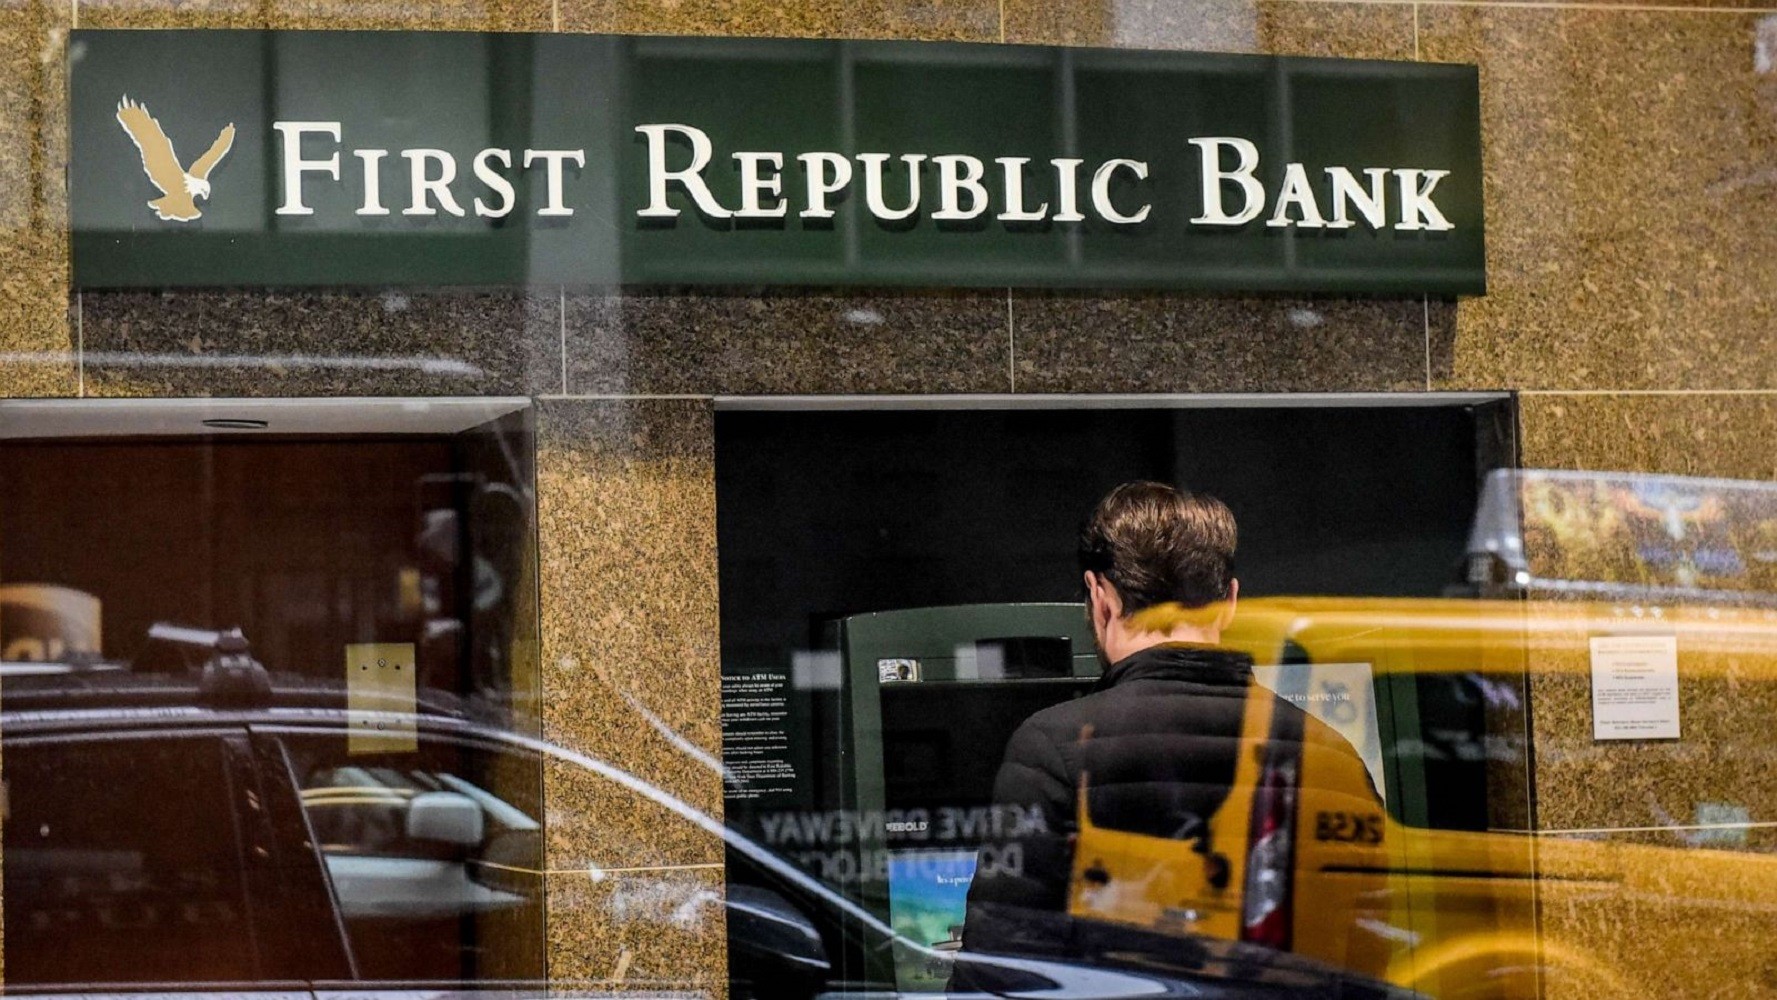 سقوط جديد يشهده أحد أشهر بنوك أمريكا